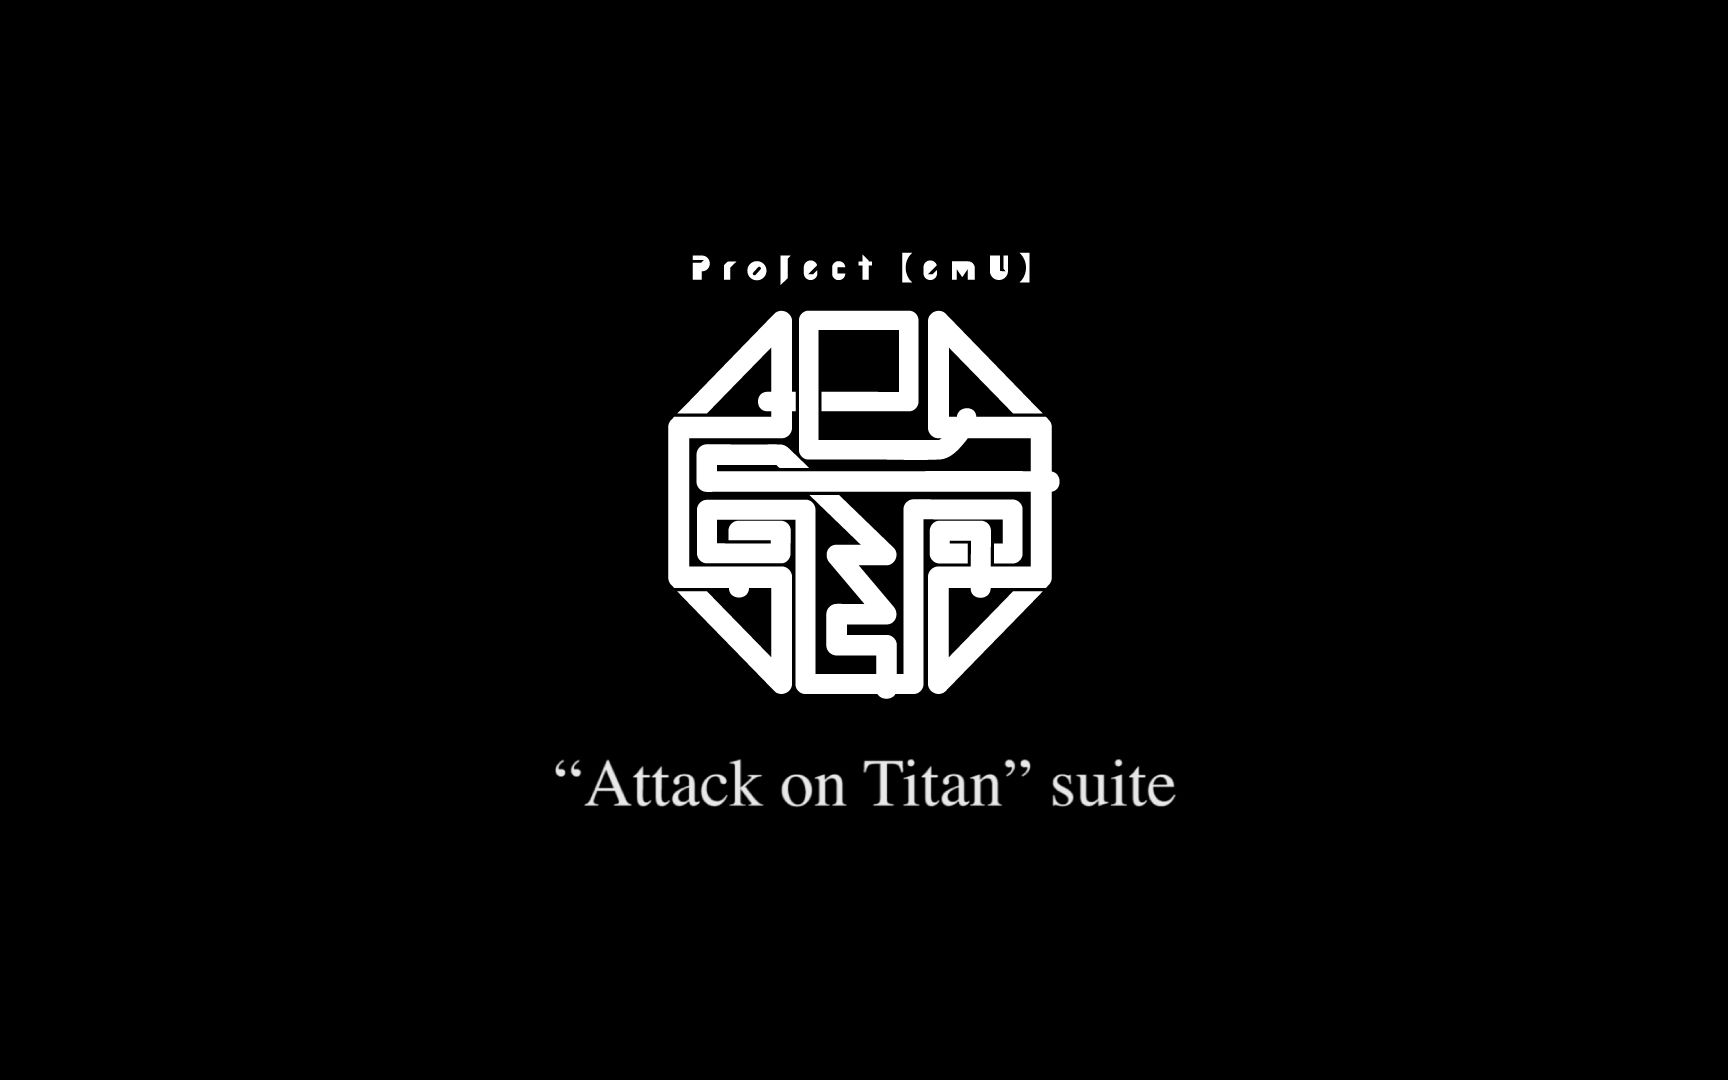 泽野弘之 / Project【emU】“Attack on Titan”suite【官方投稿】